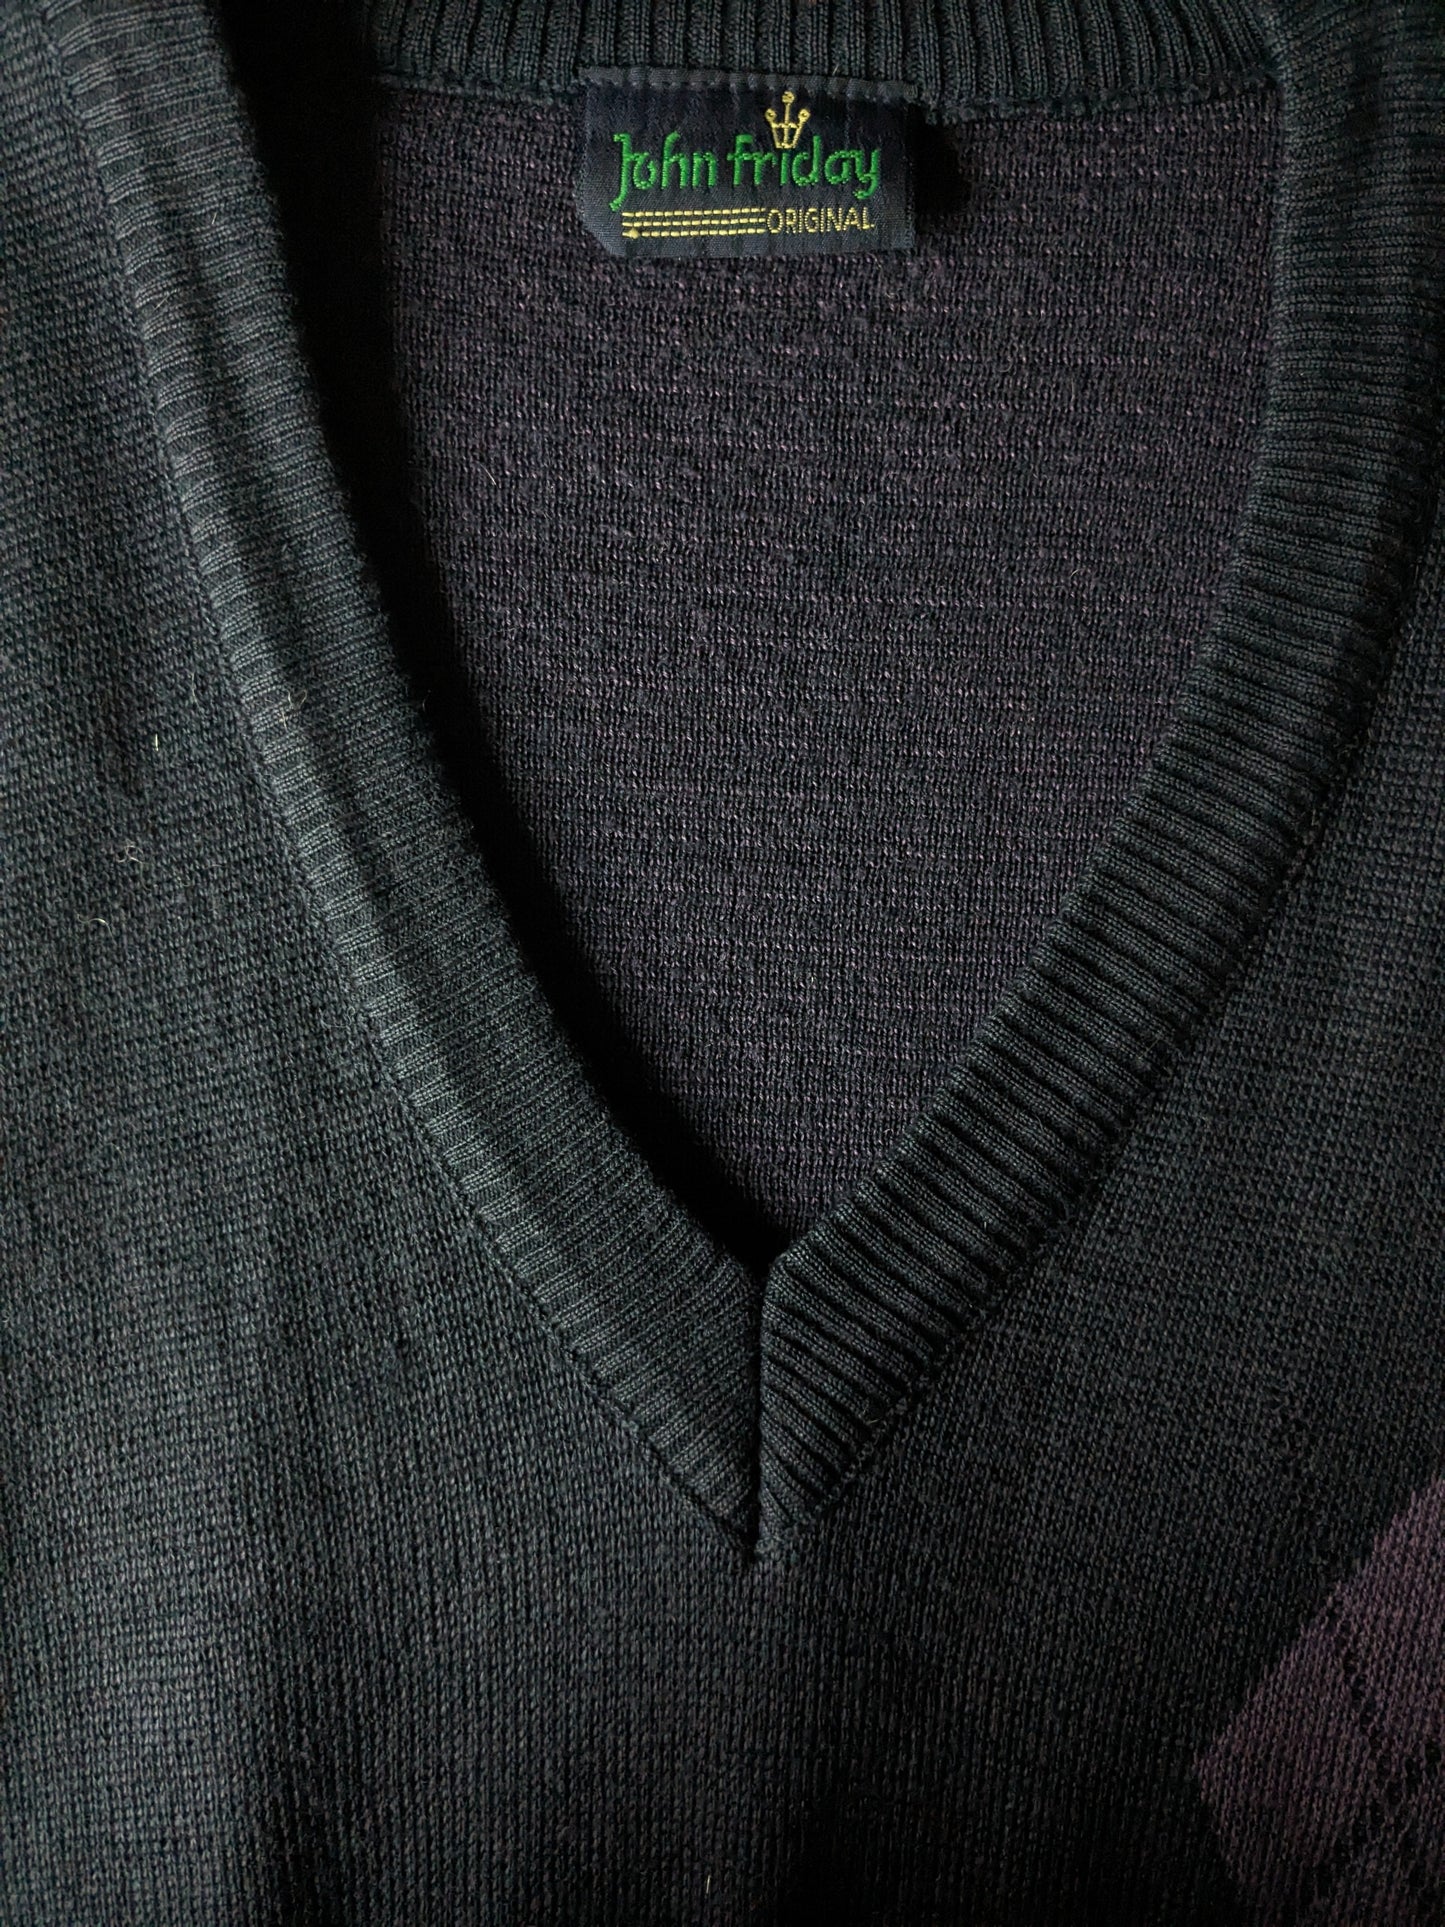 Vintage John Friday Spencer. Couleur violet foncé. Taille S. 50% de laine.